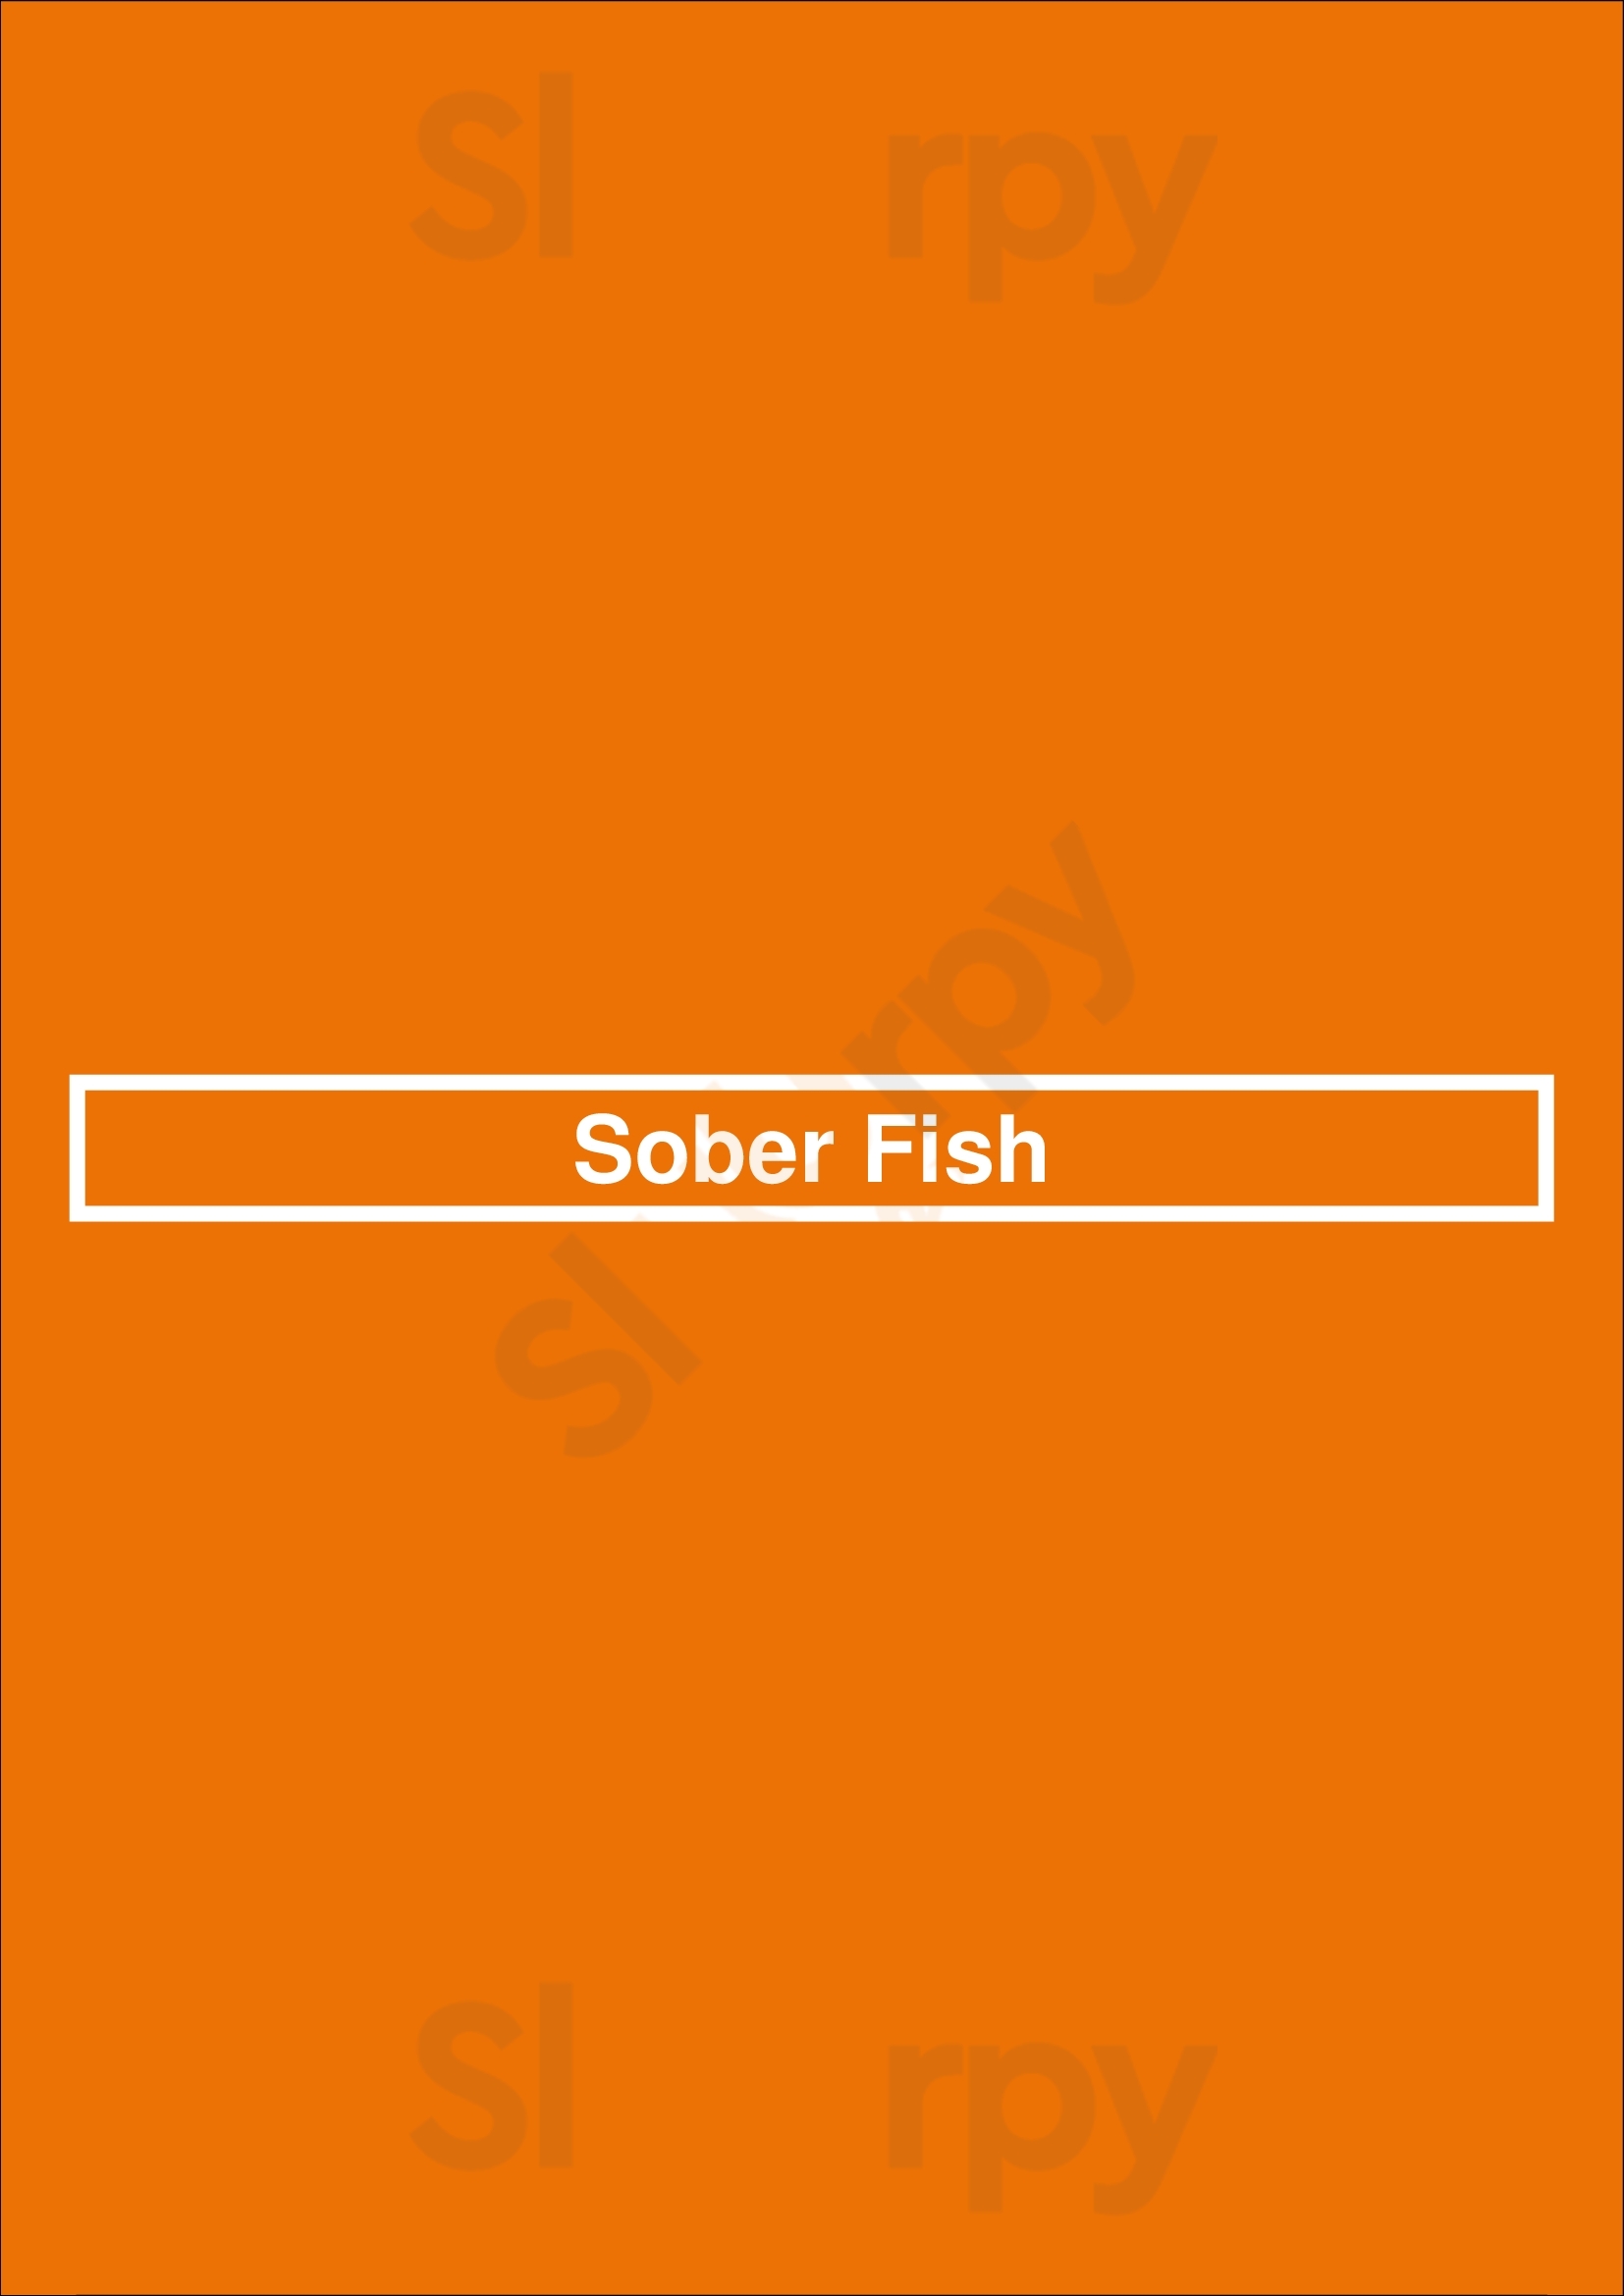 Sober Fish Minneapolis Menu - 1